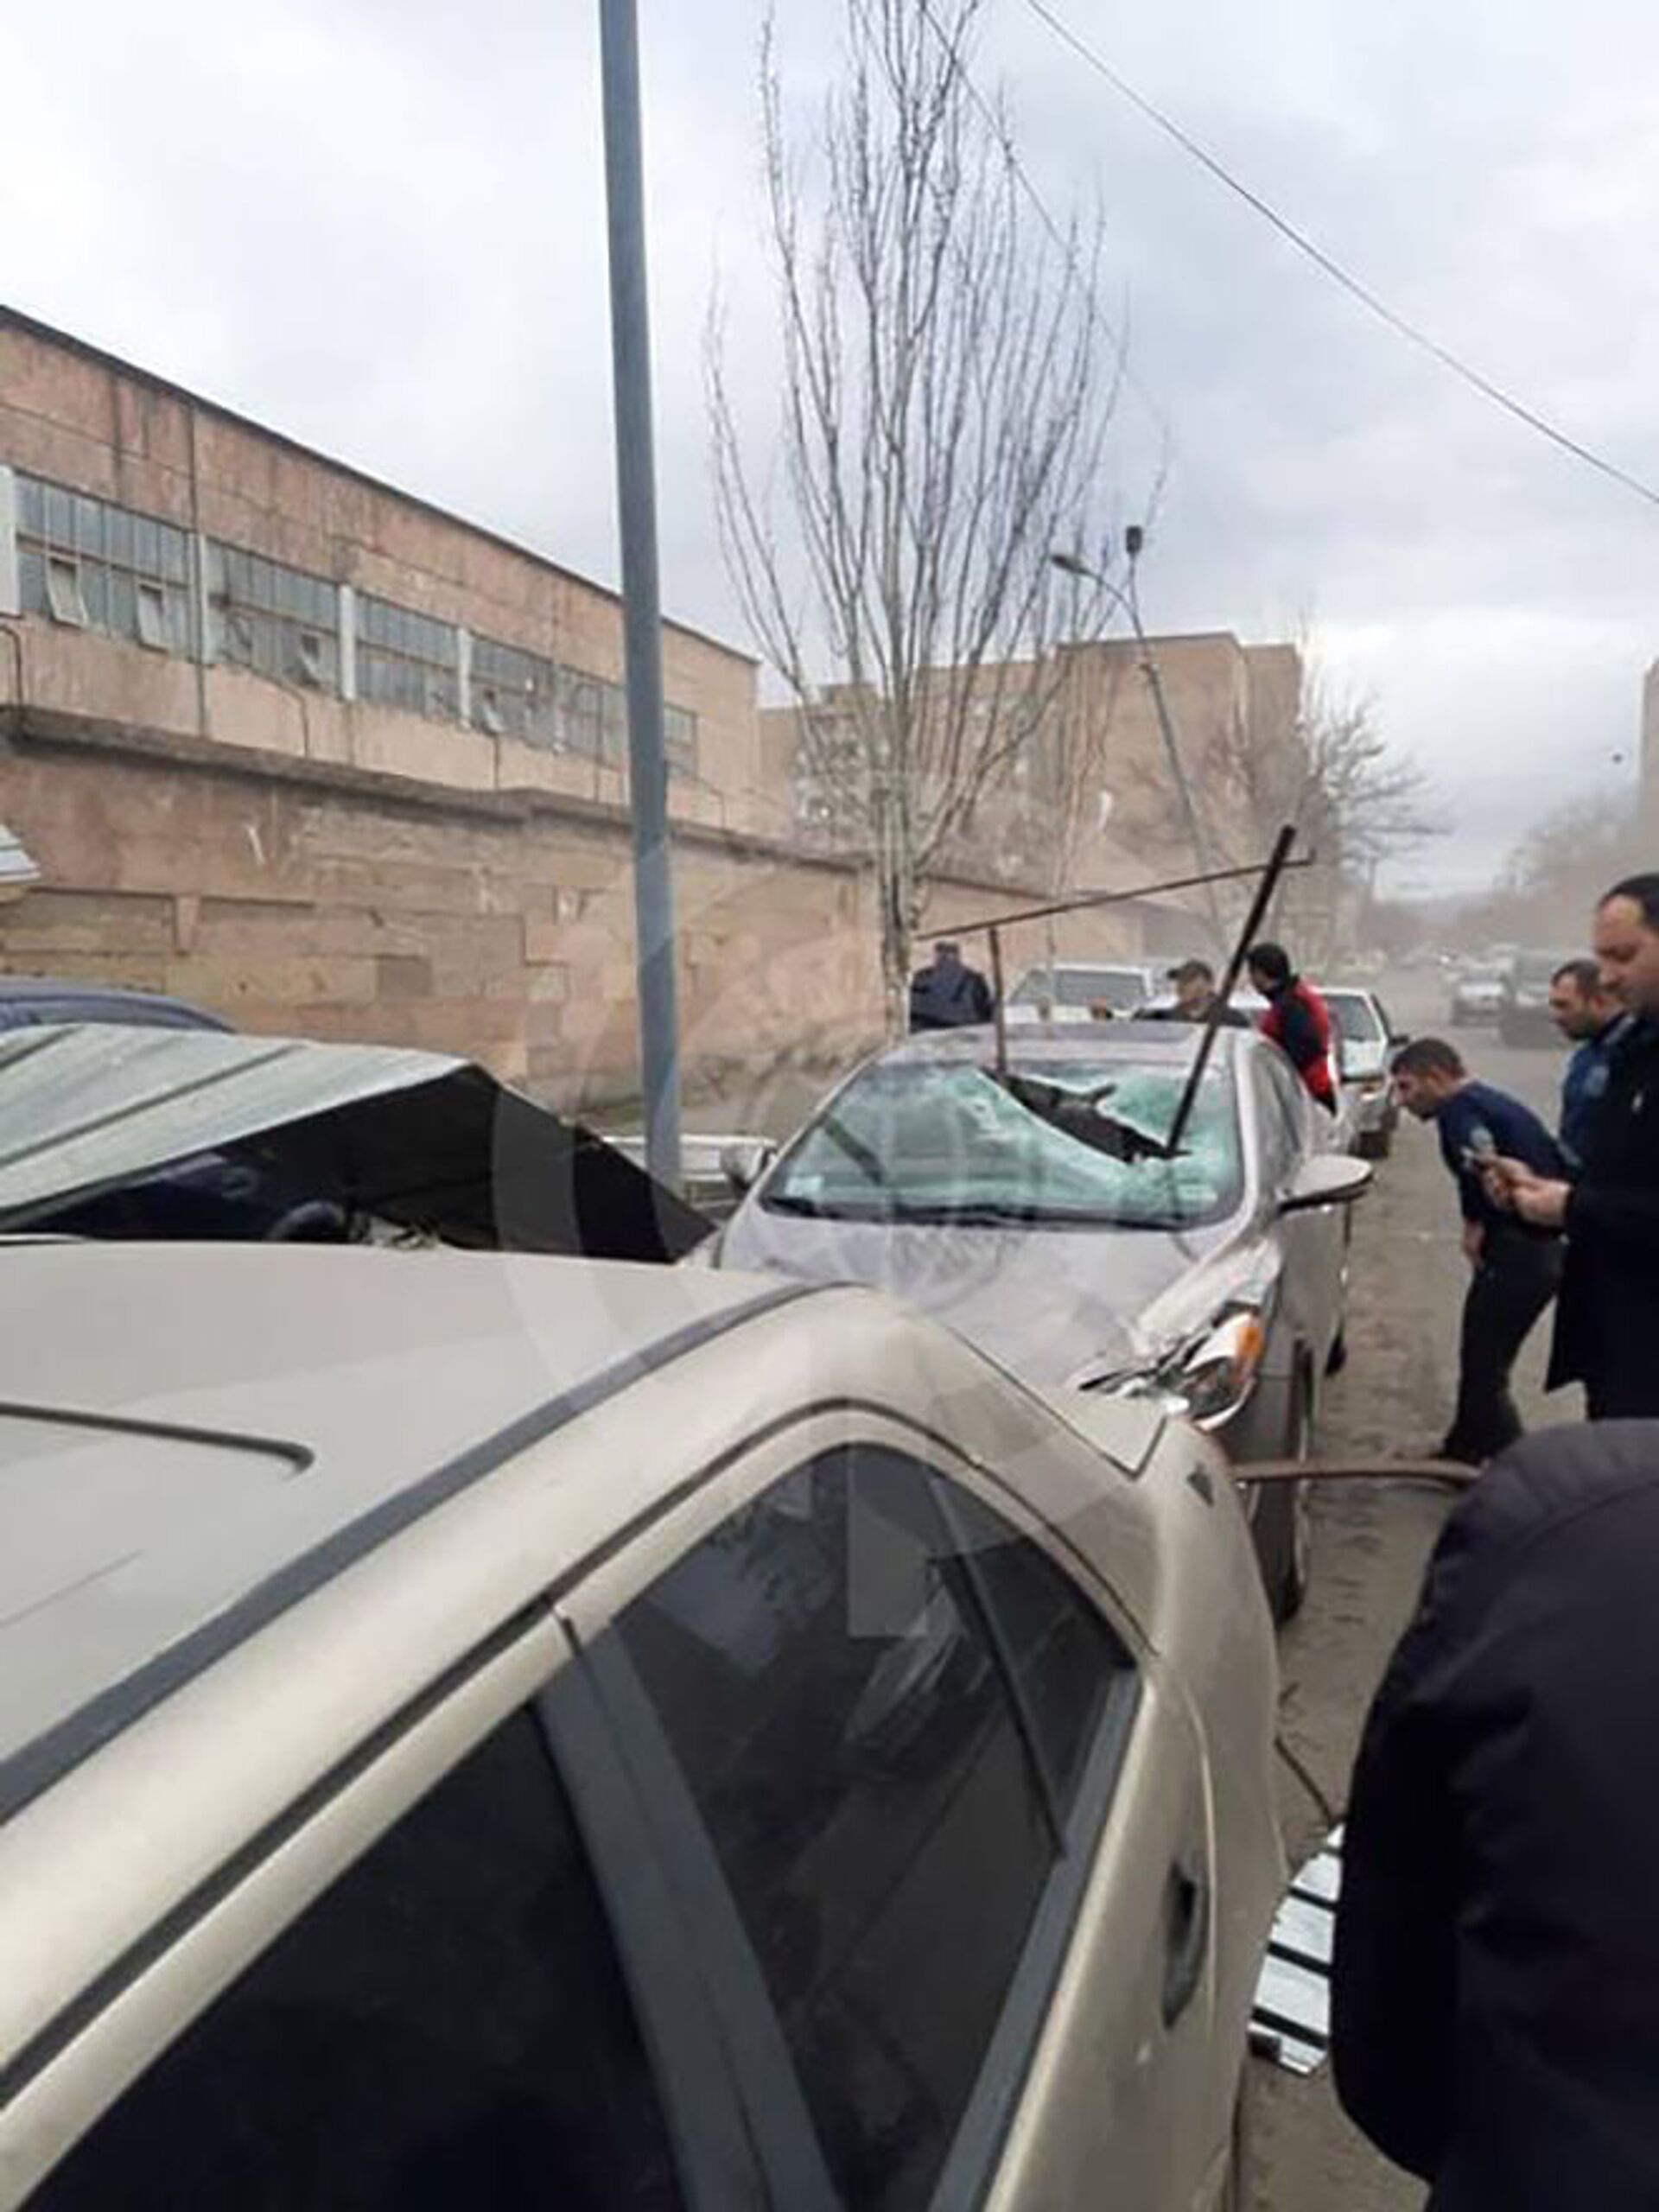 Ուժեղ քամին Երևանում ծածկեր է պոկել, ավտոմեքենաներ են վնասվել. լուսանկարներ - Sputnik Արմենիա, 1920, 17.02.2021